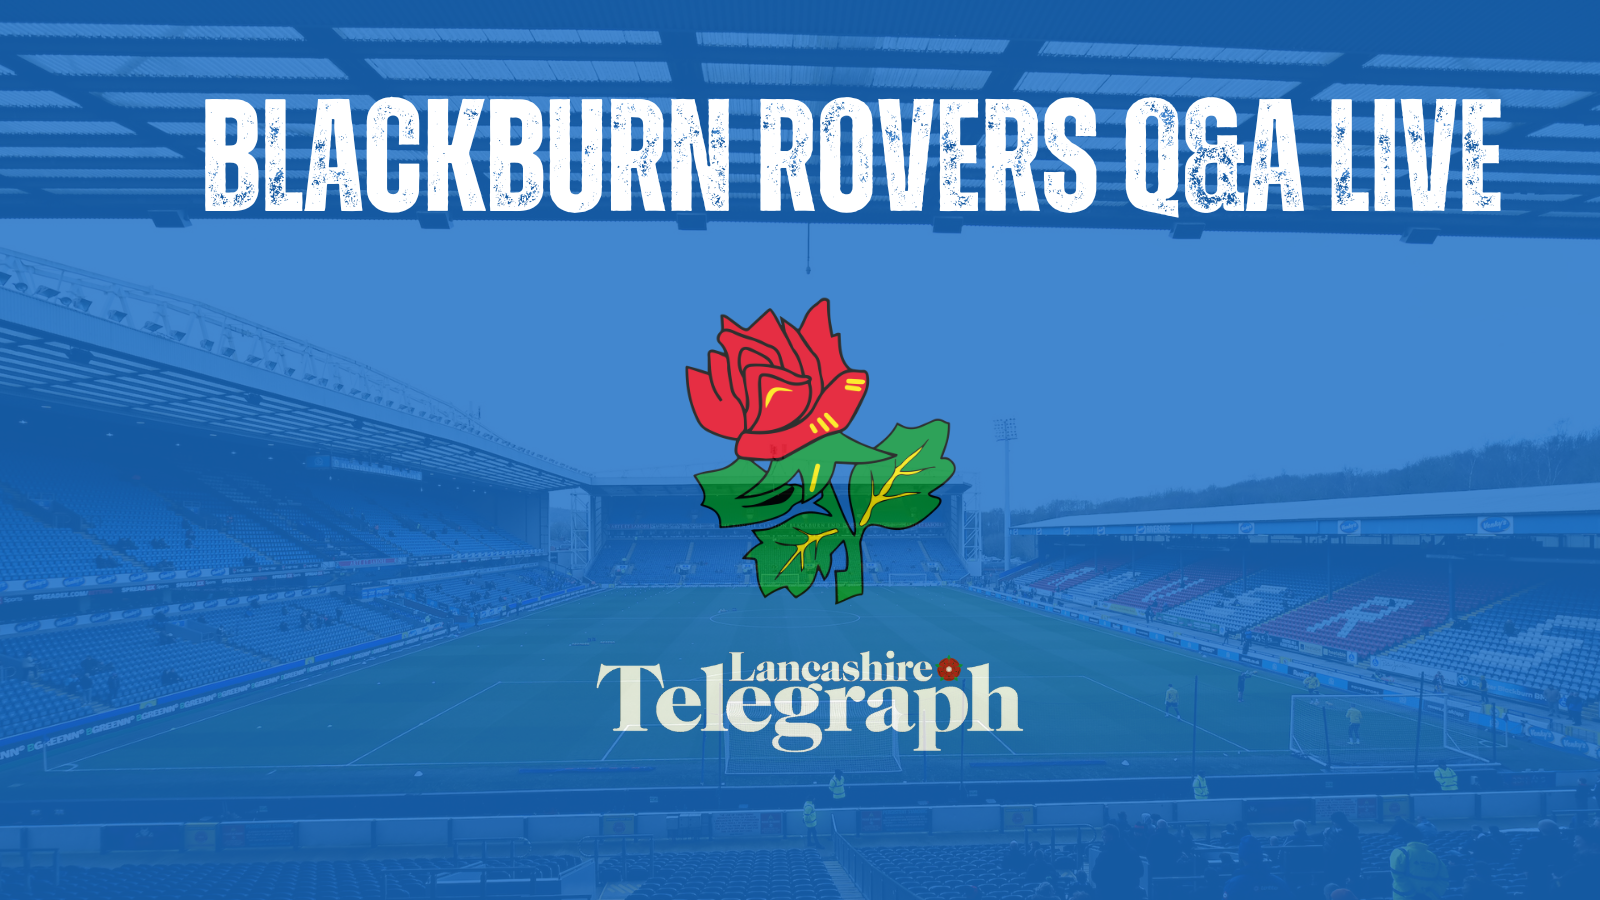 Blackburn Rovers Q&A RECAP